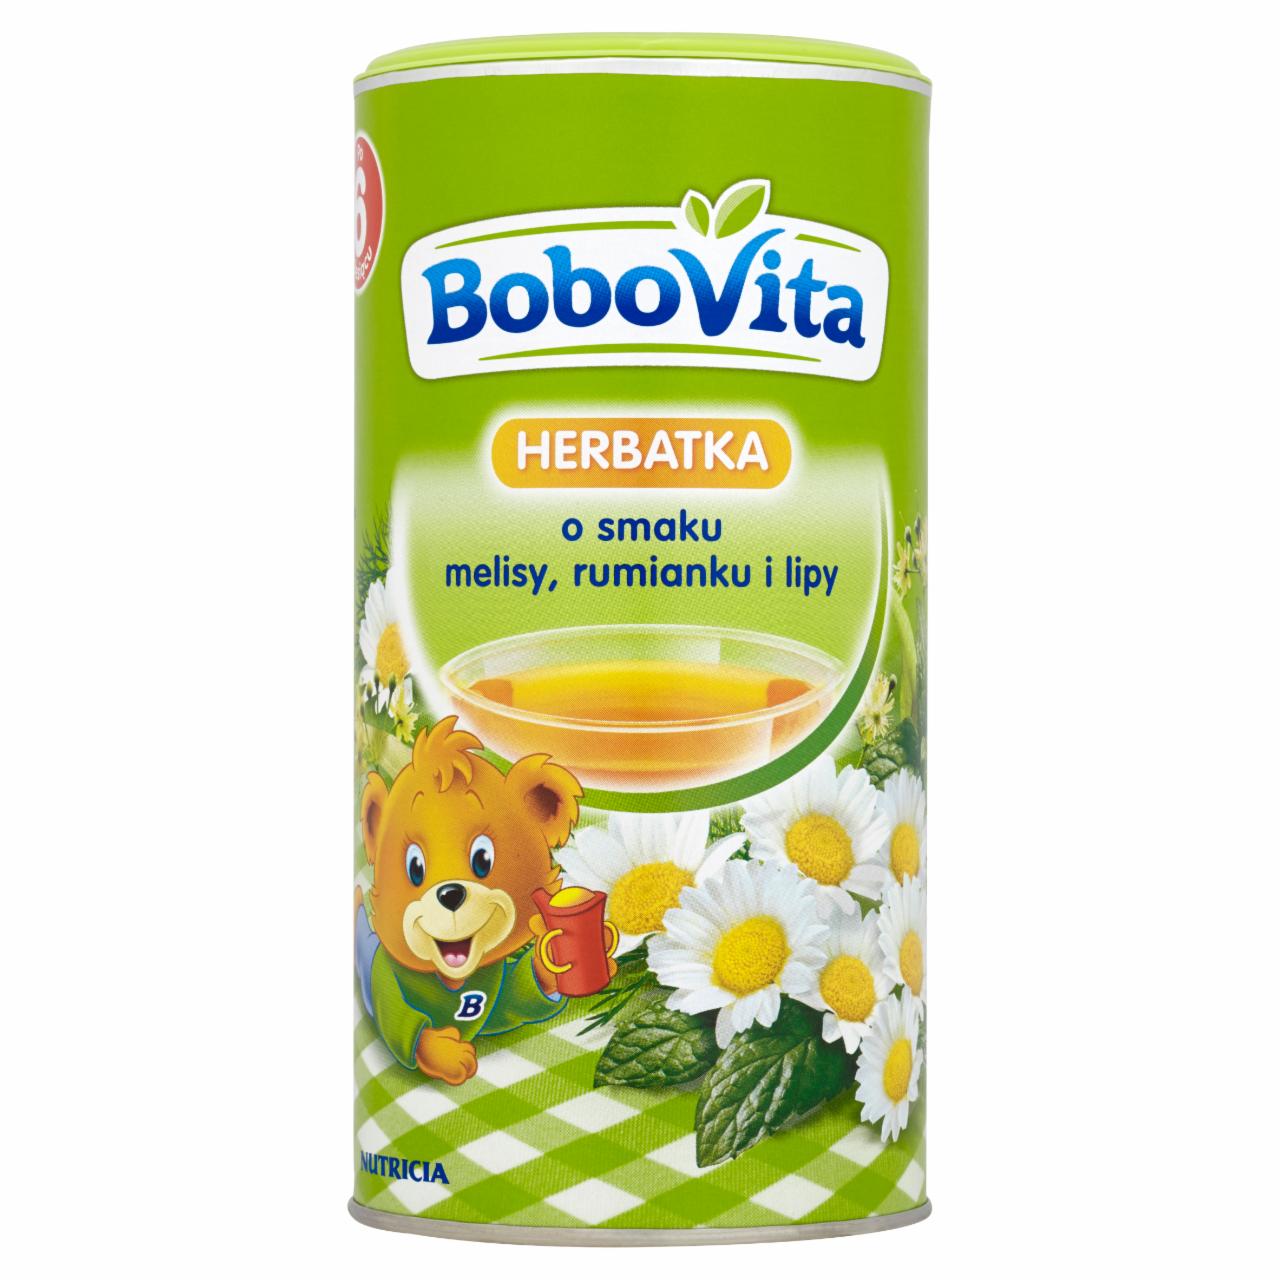 Zdjęcia - BoboVita Herbatka o smaku melisy rumianku i lipy po 6 miesiącu 200 g